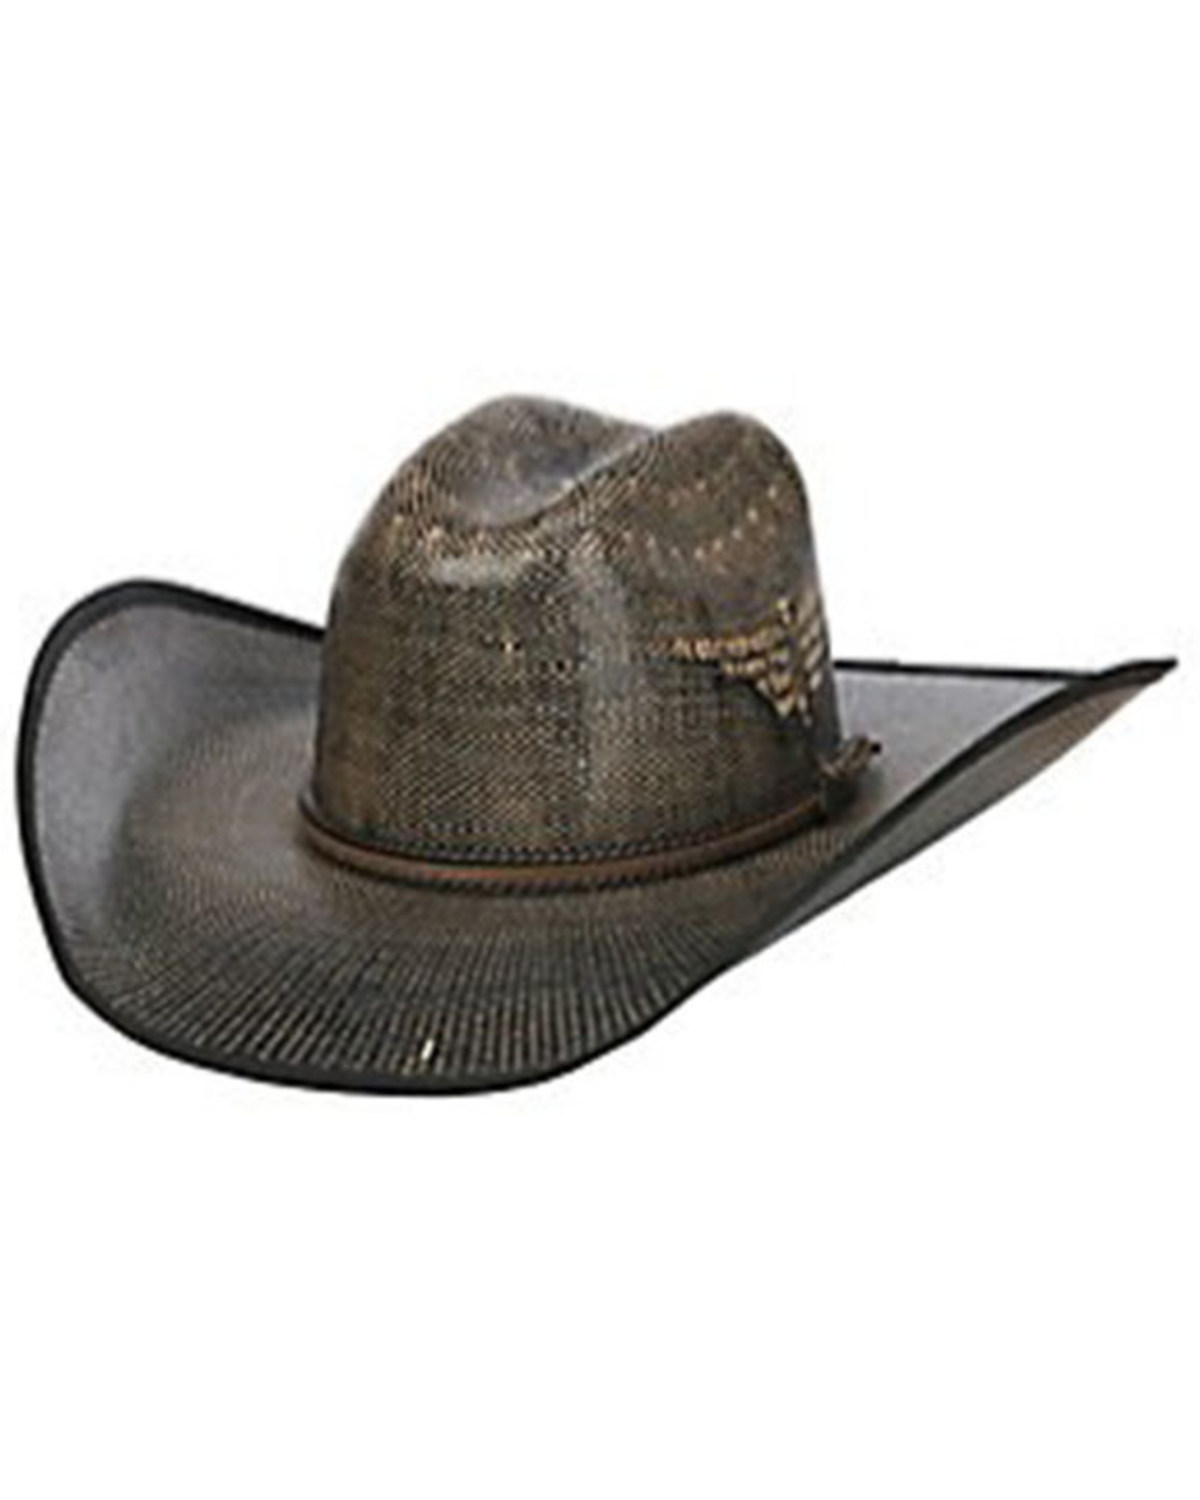 Justin Men's Fenix Bent Rail Midnight Straw Cowboy Hat